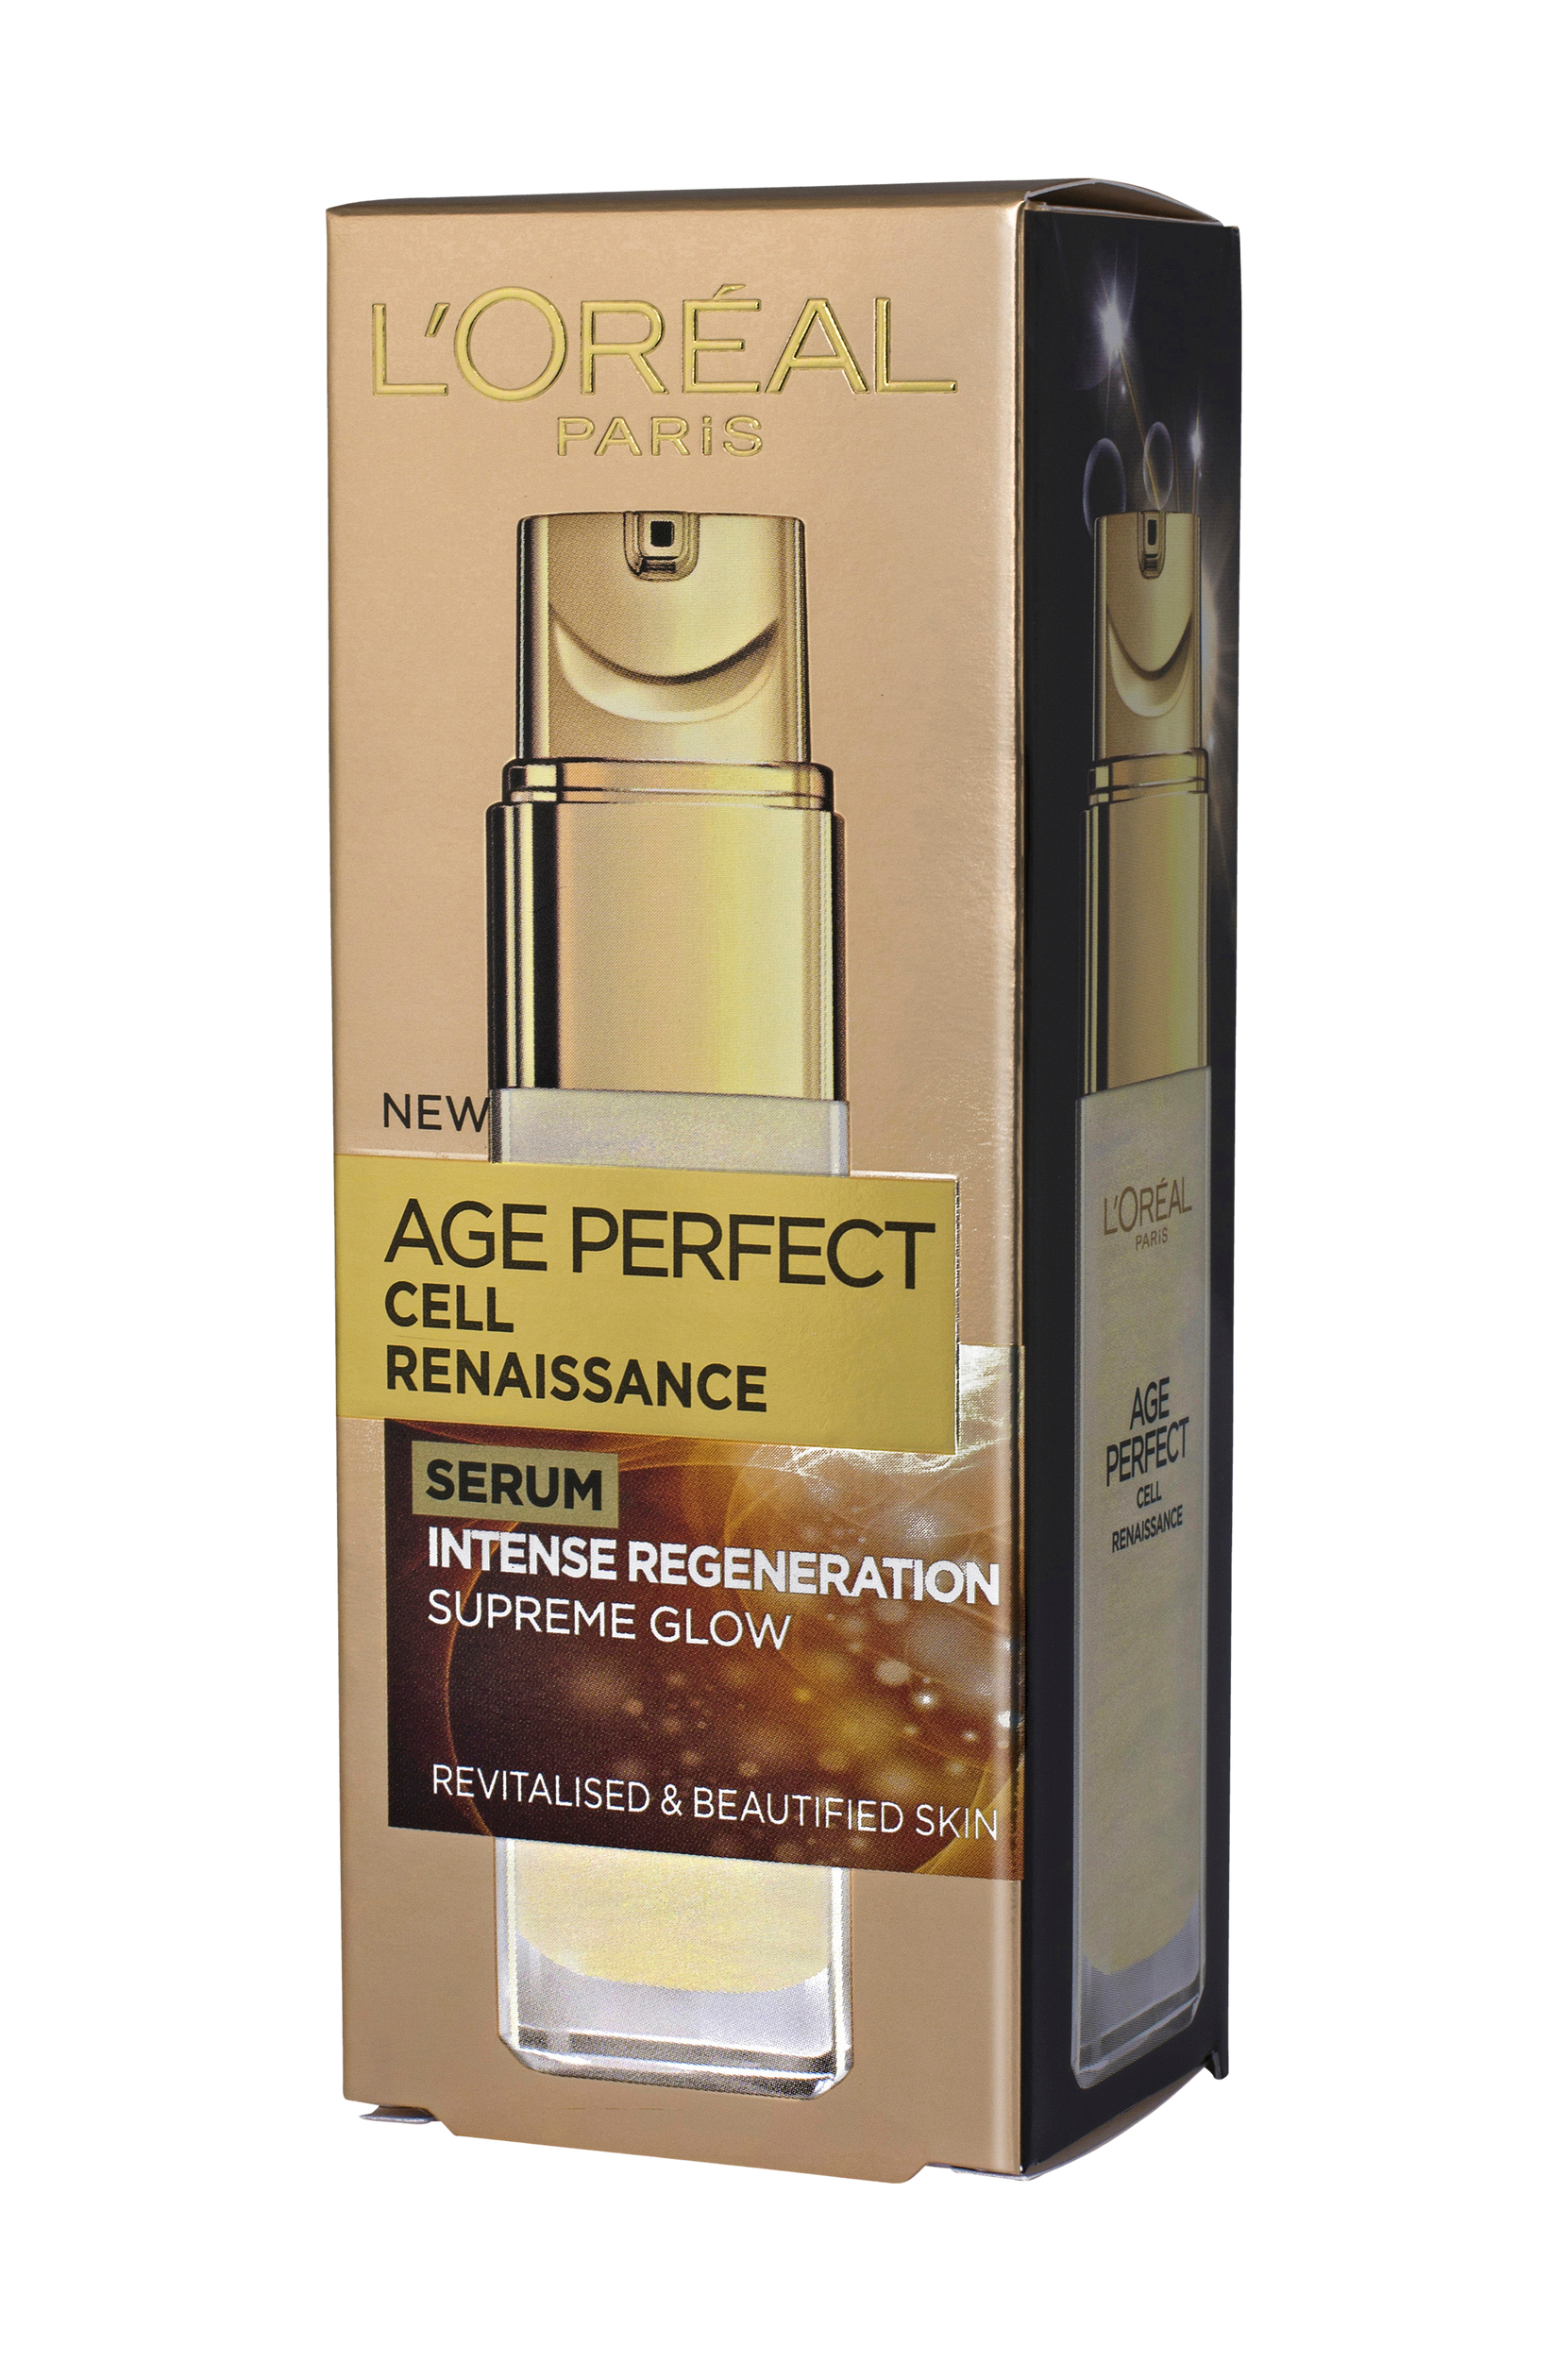 Age Perfect Renaissance Cellulaire serum 30ml, L'Oréal Paris